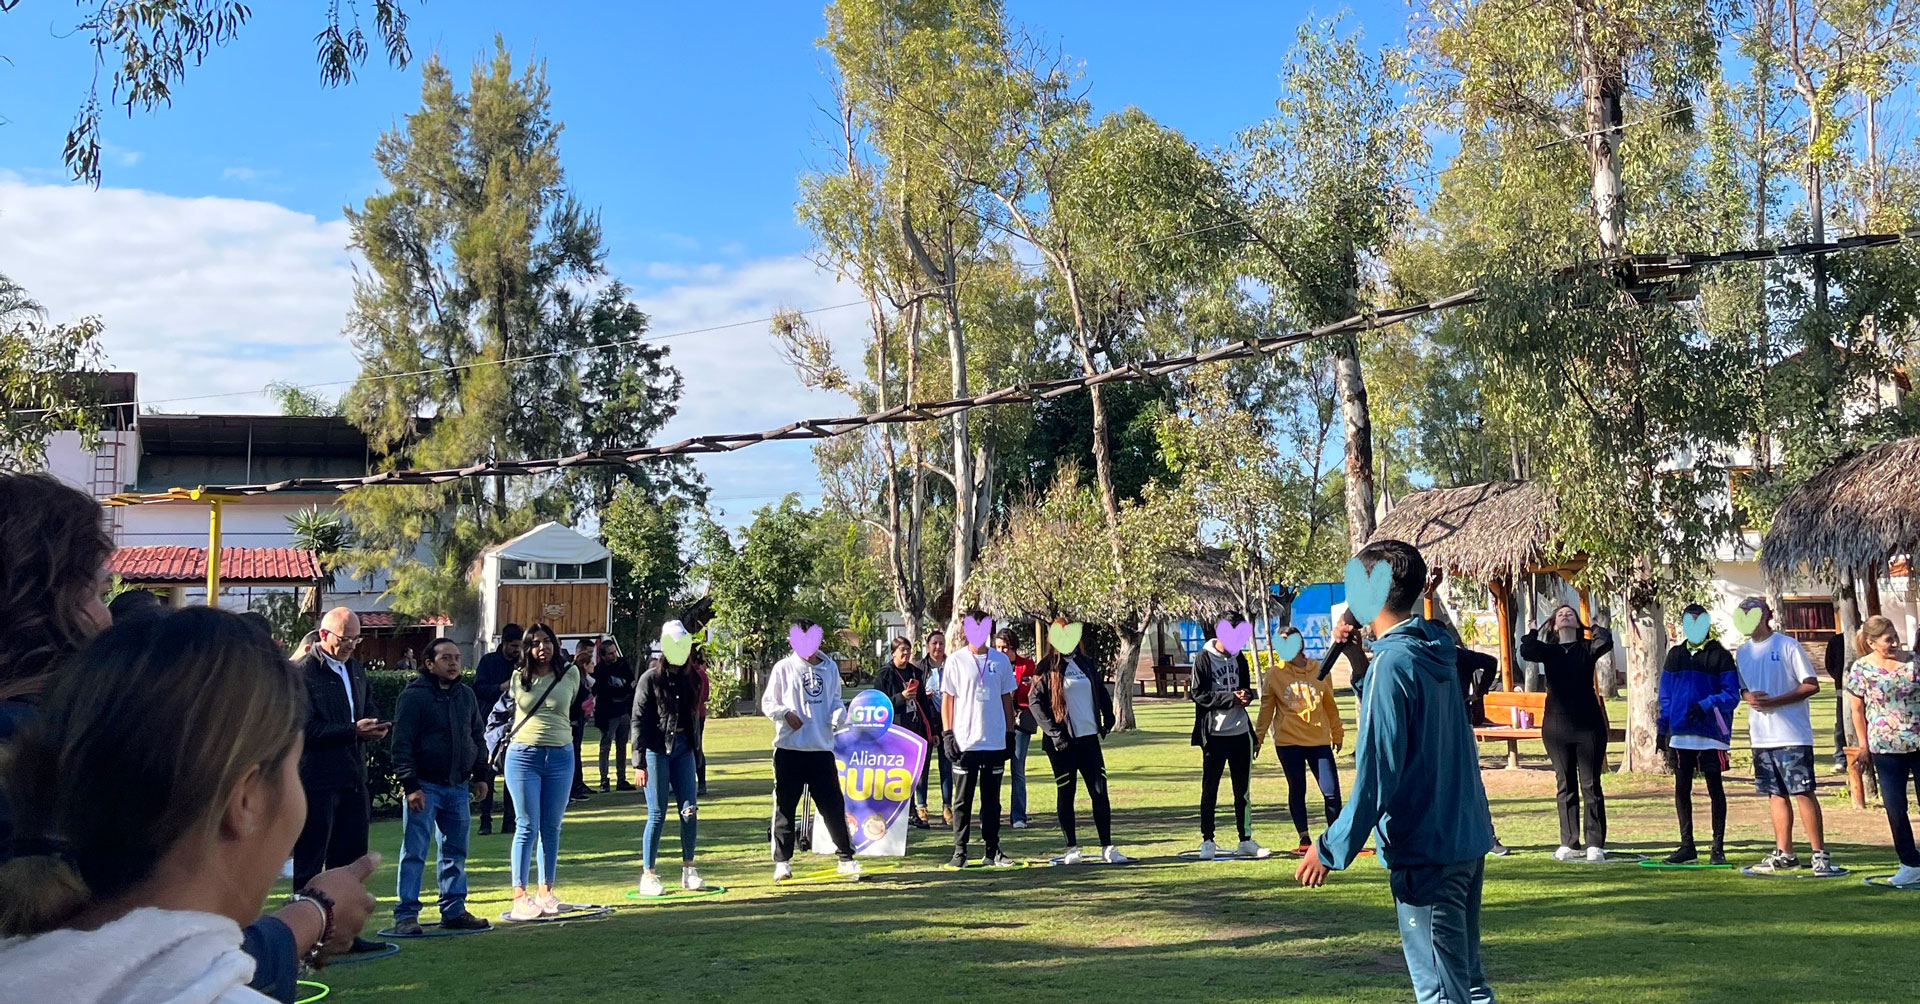 Primer Campamento "Mi Nuevo Camino" de Fundación Comuntia, con adolescentes de diferentes CAS en Guanajuato.